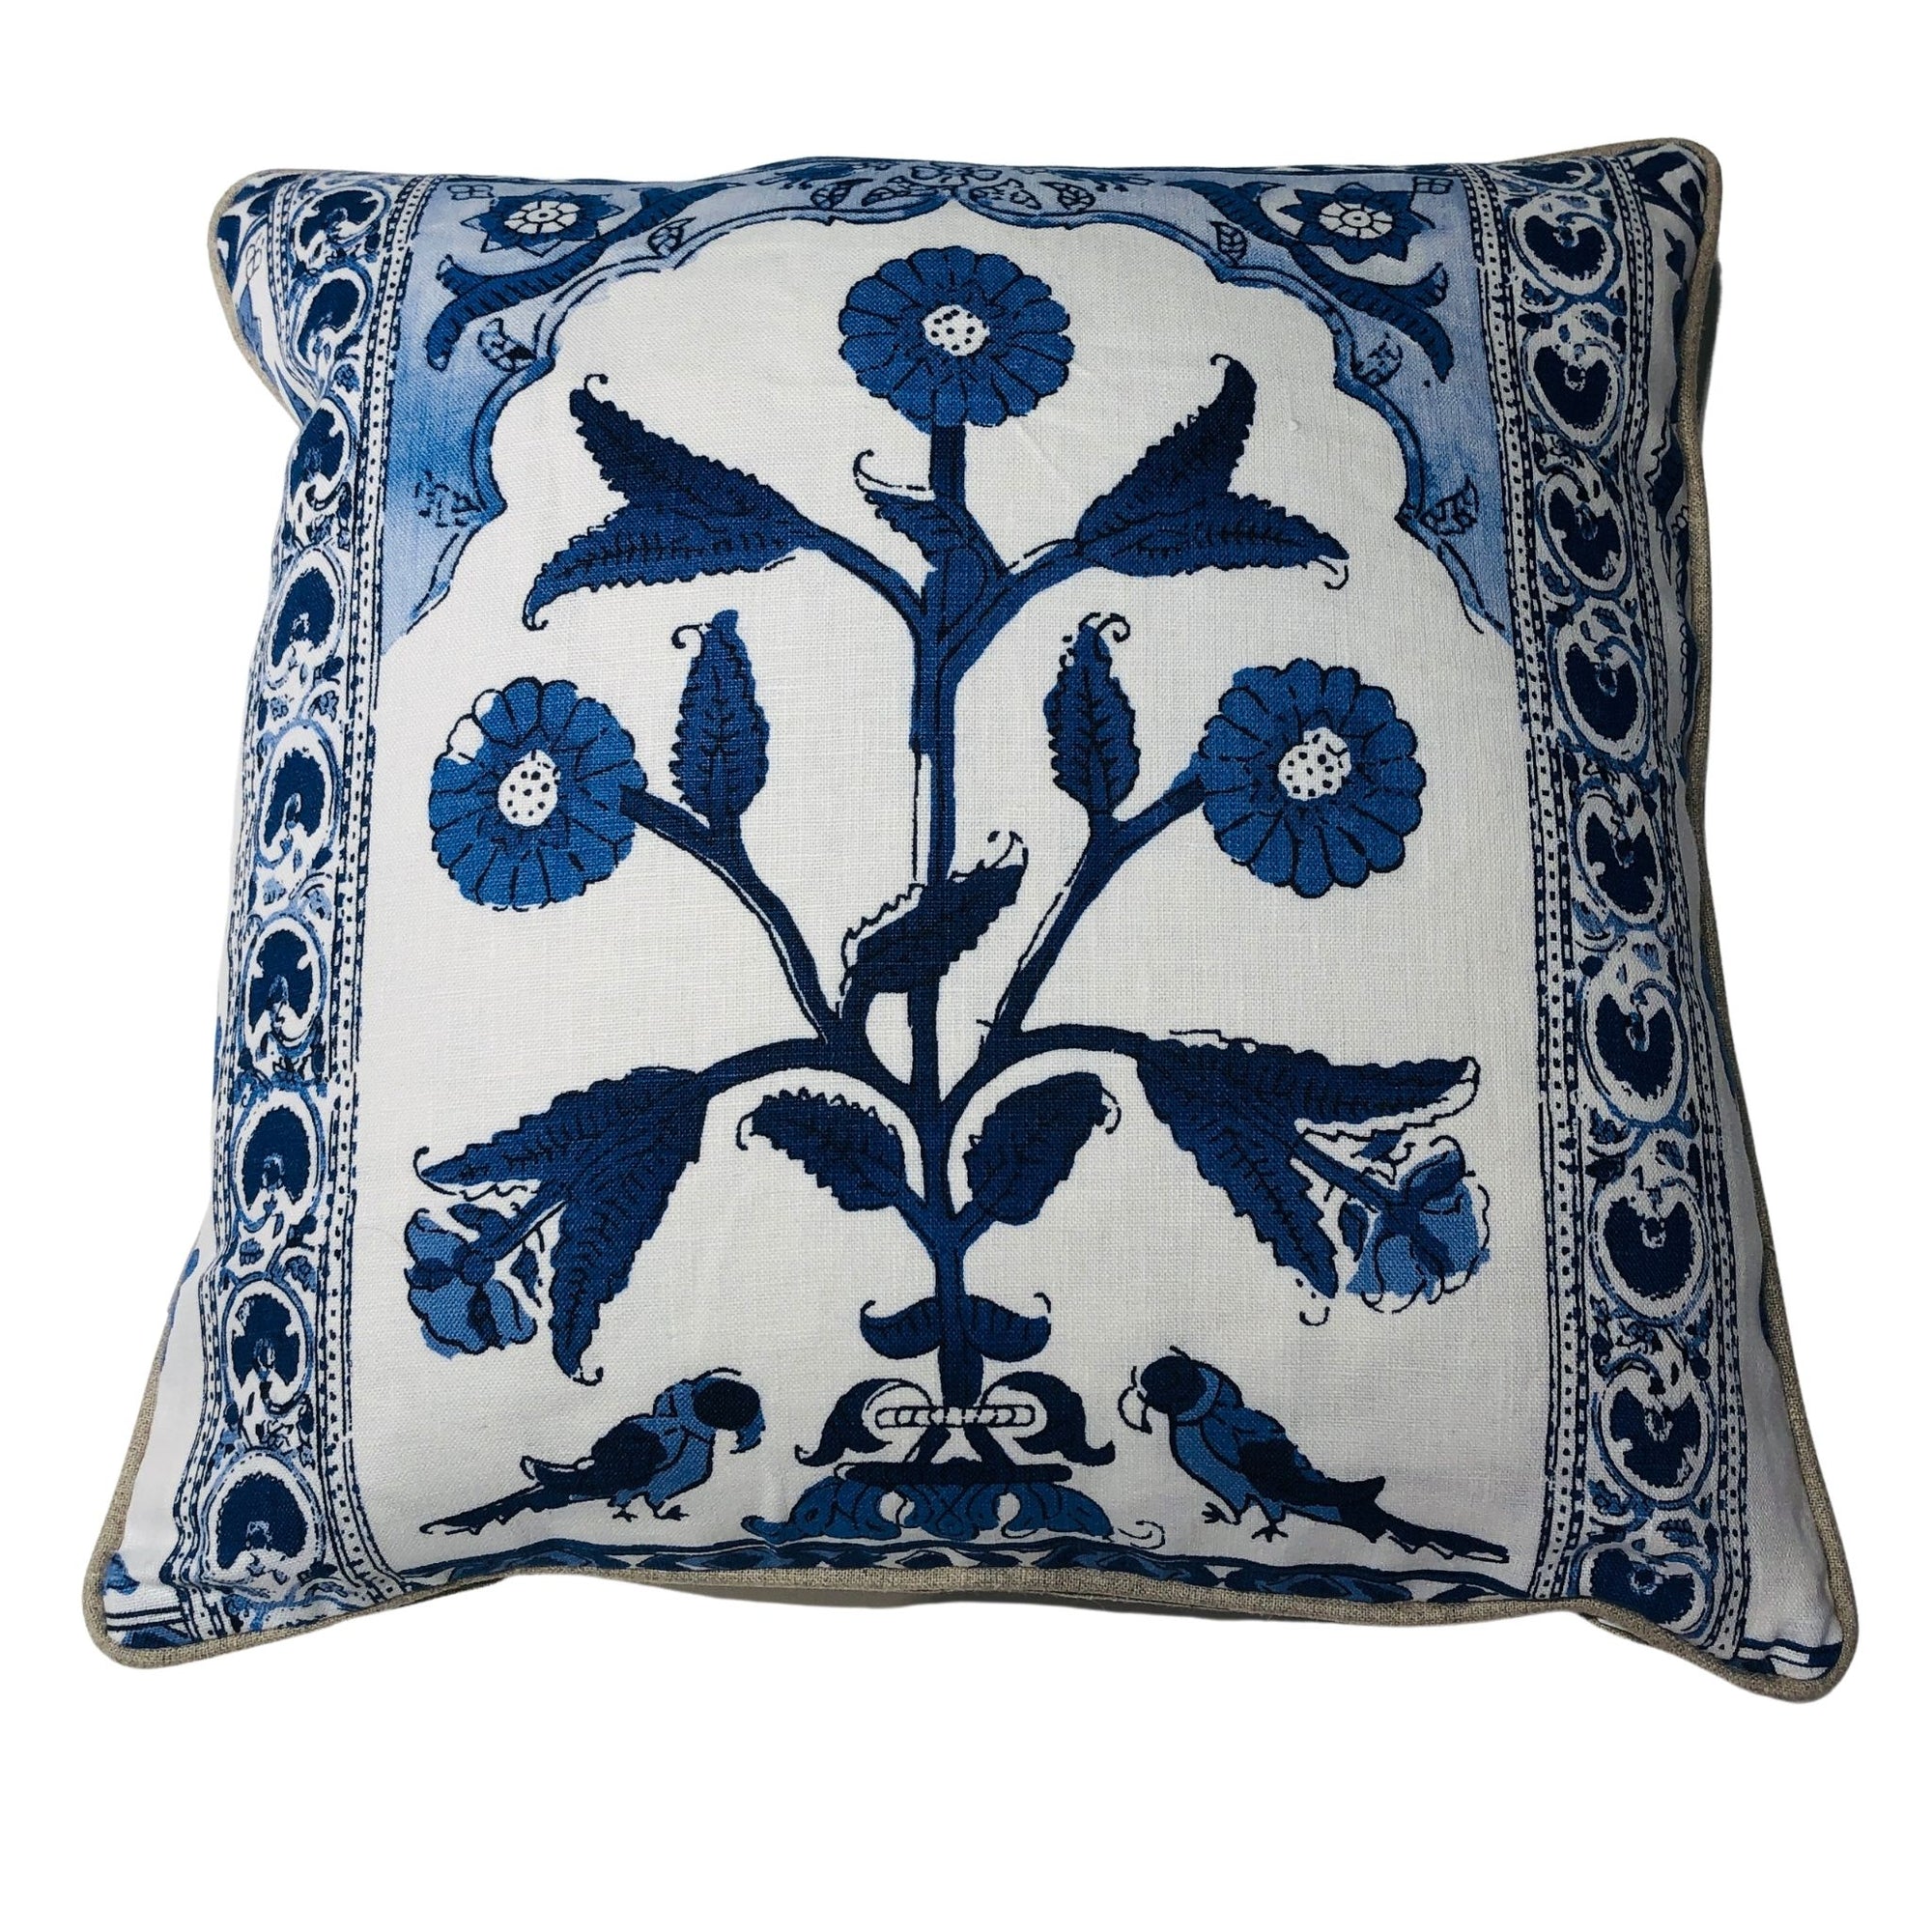 Agra Pillow - Blue/White